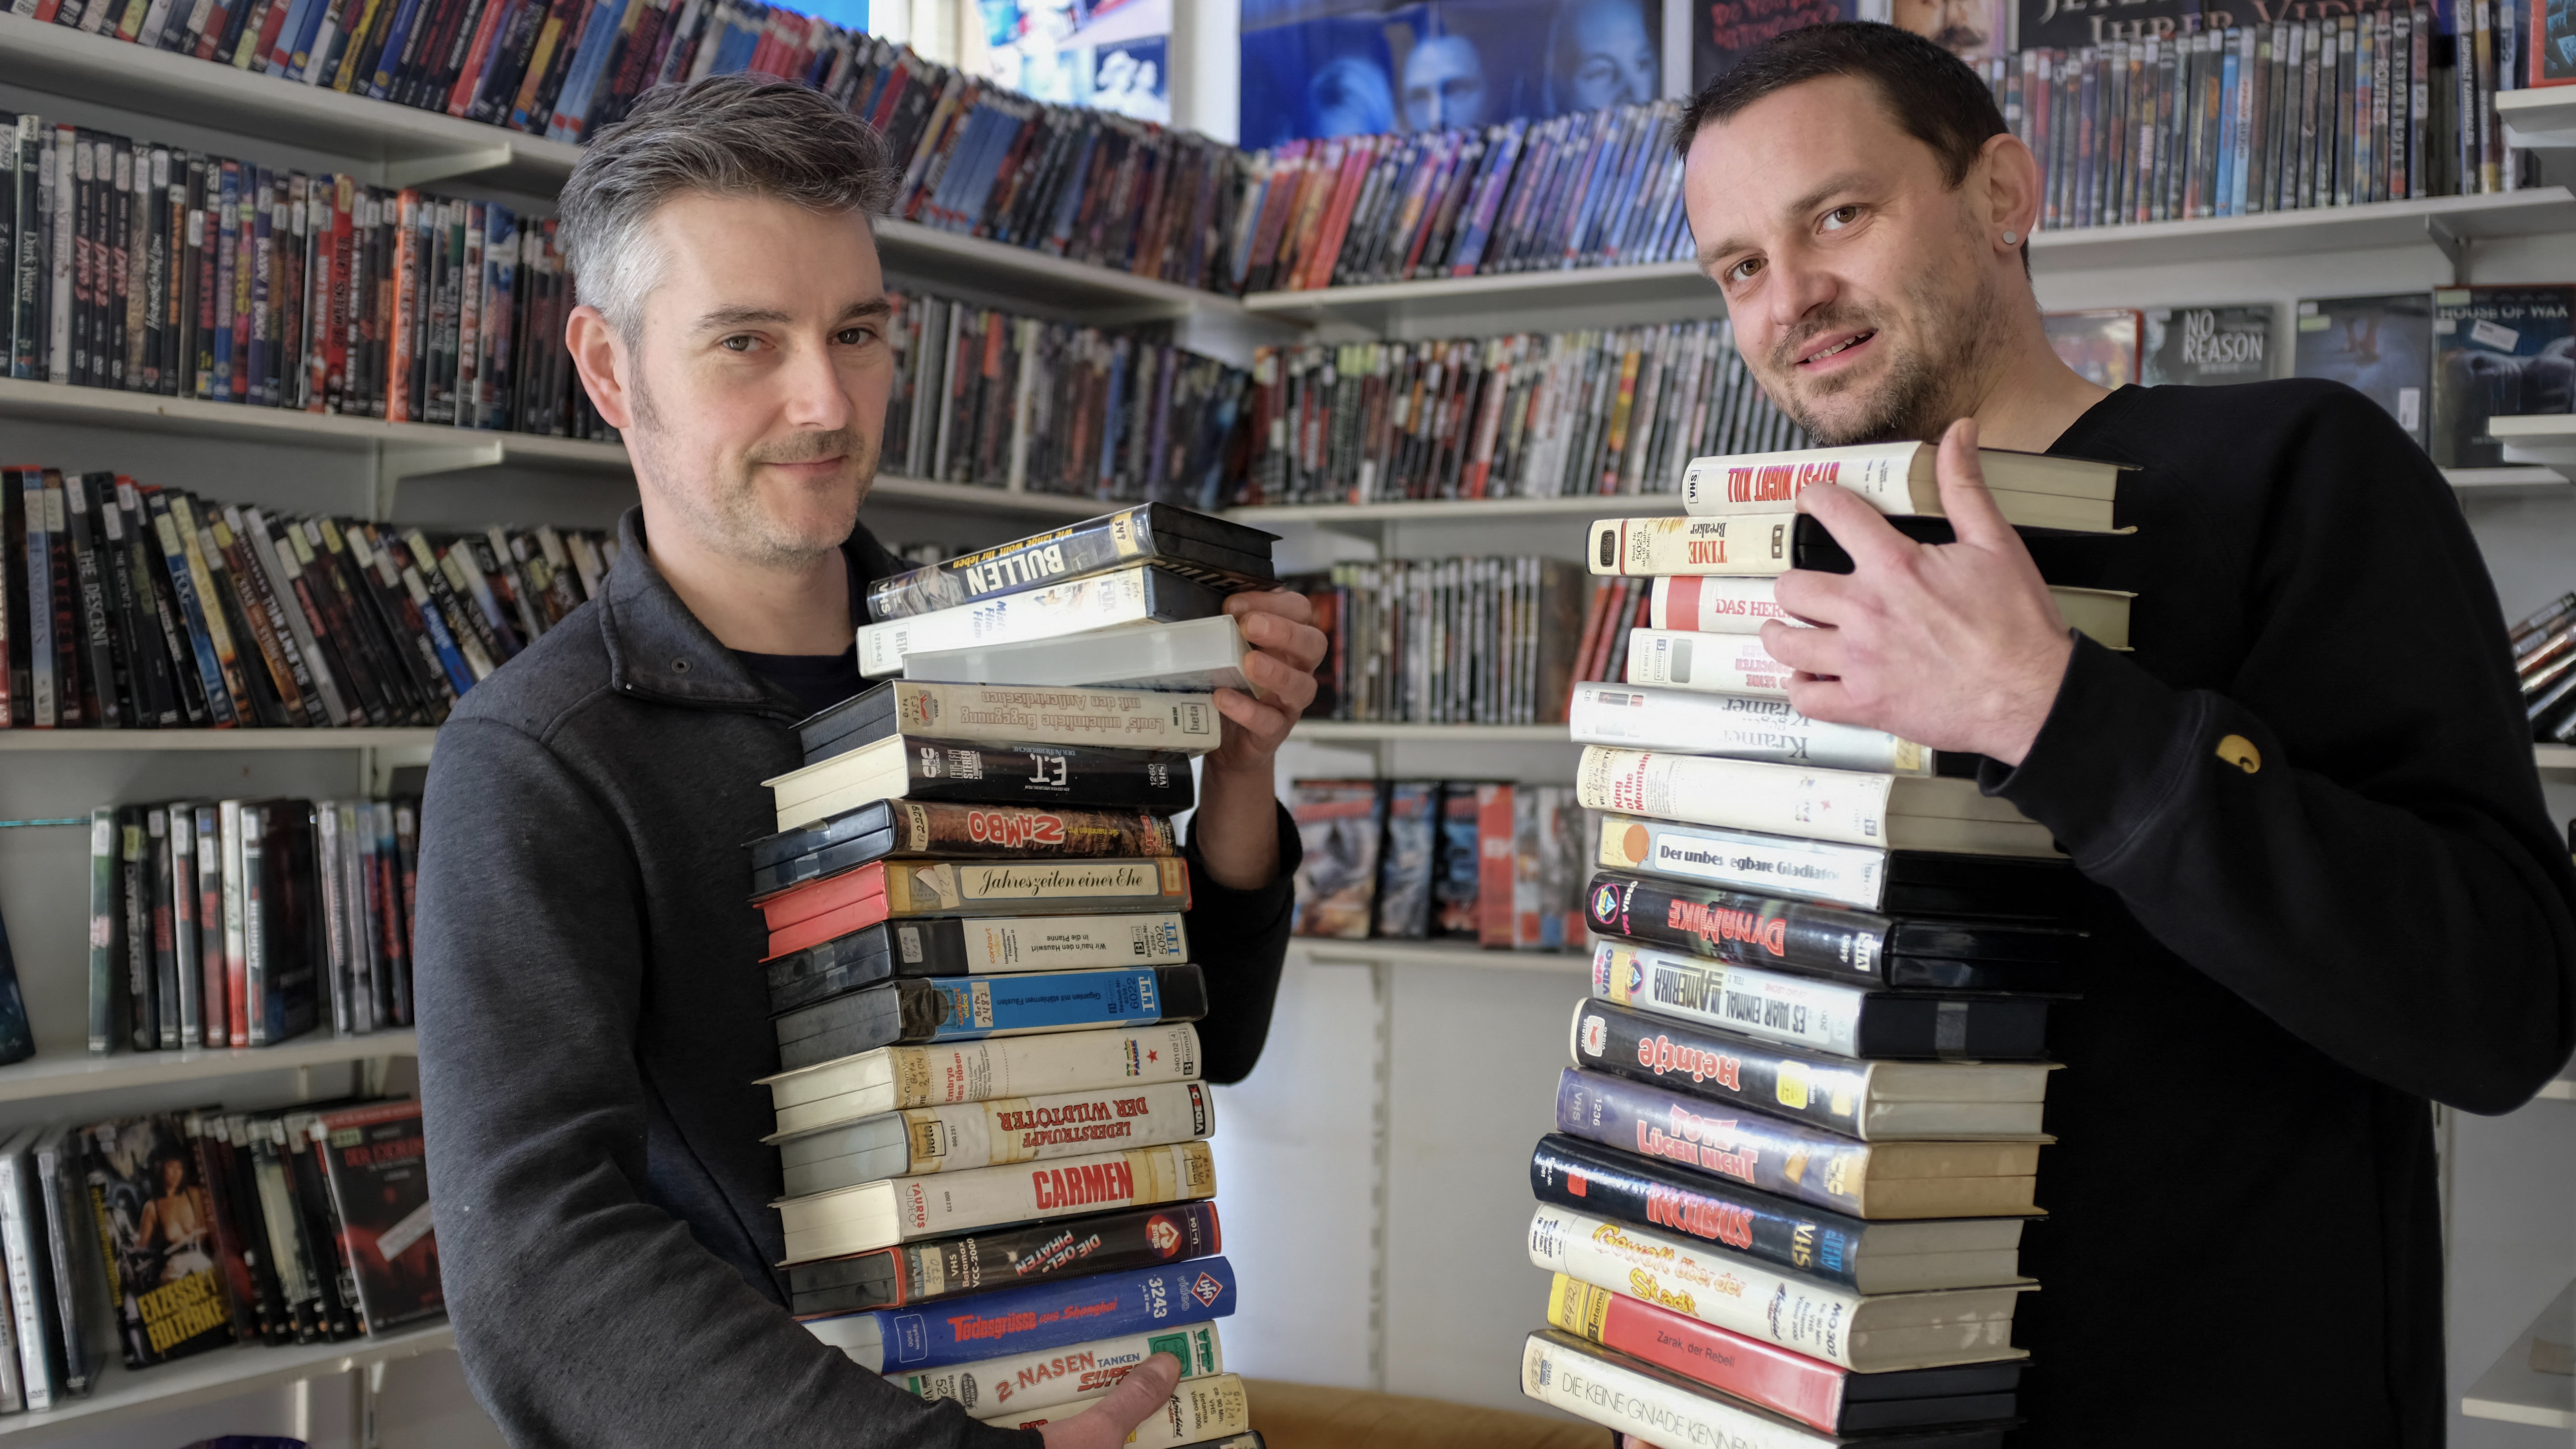 Ralf Stadler és Christoph Langguth, a Randfilm munkatársai a Kassel filmszaküzletben 2019-ben. Németország legrégibb videótékáját a Randfilm mentette meg a bezárástól.